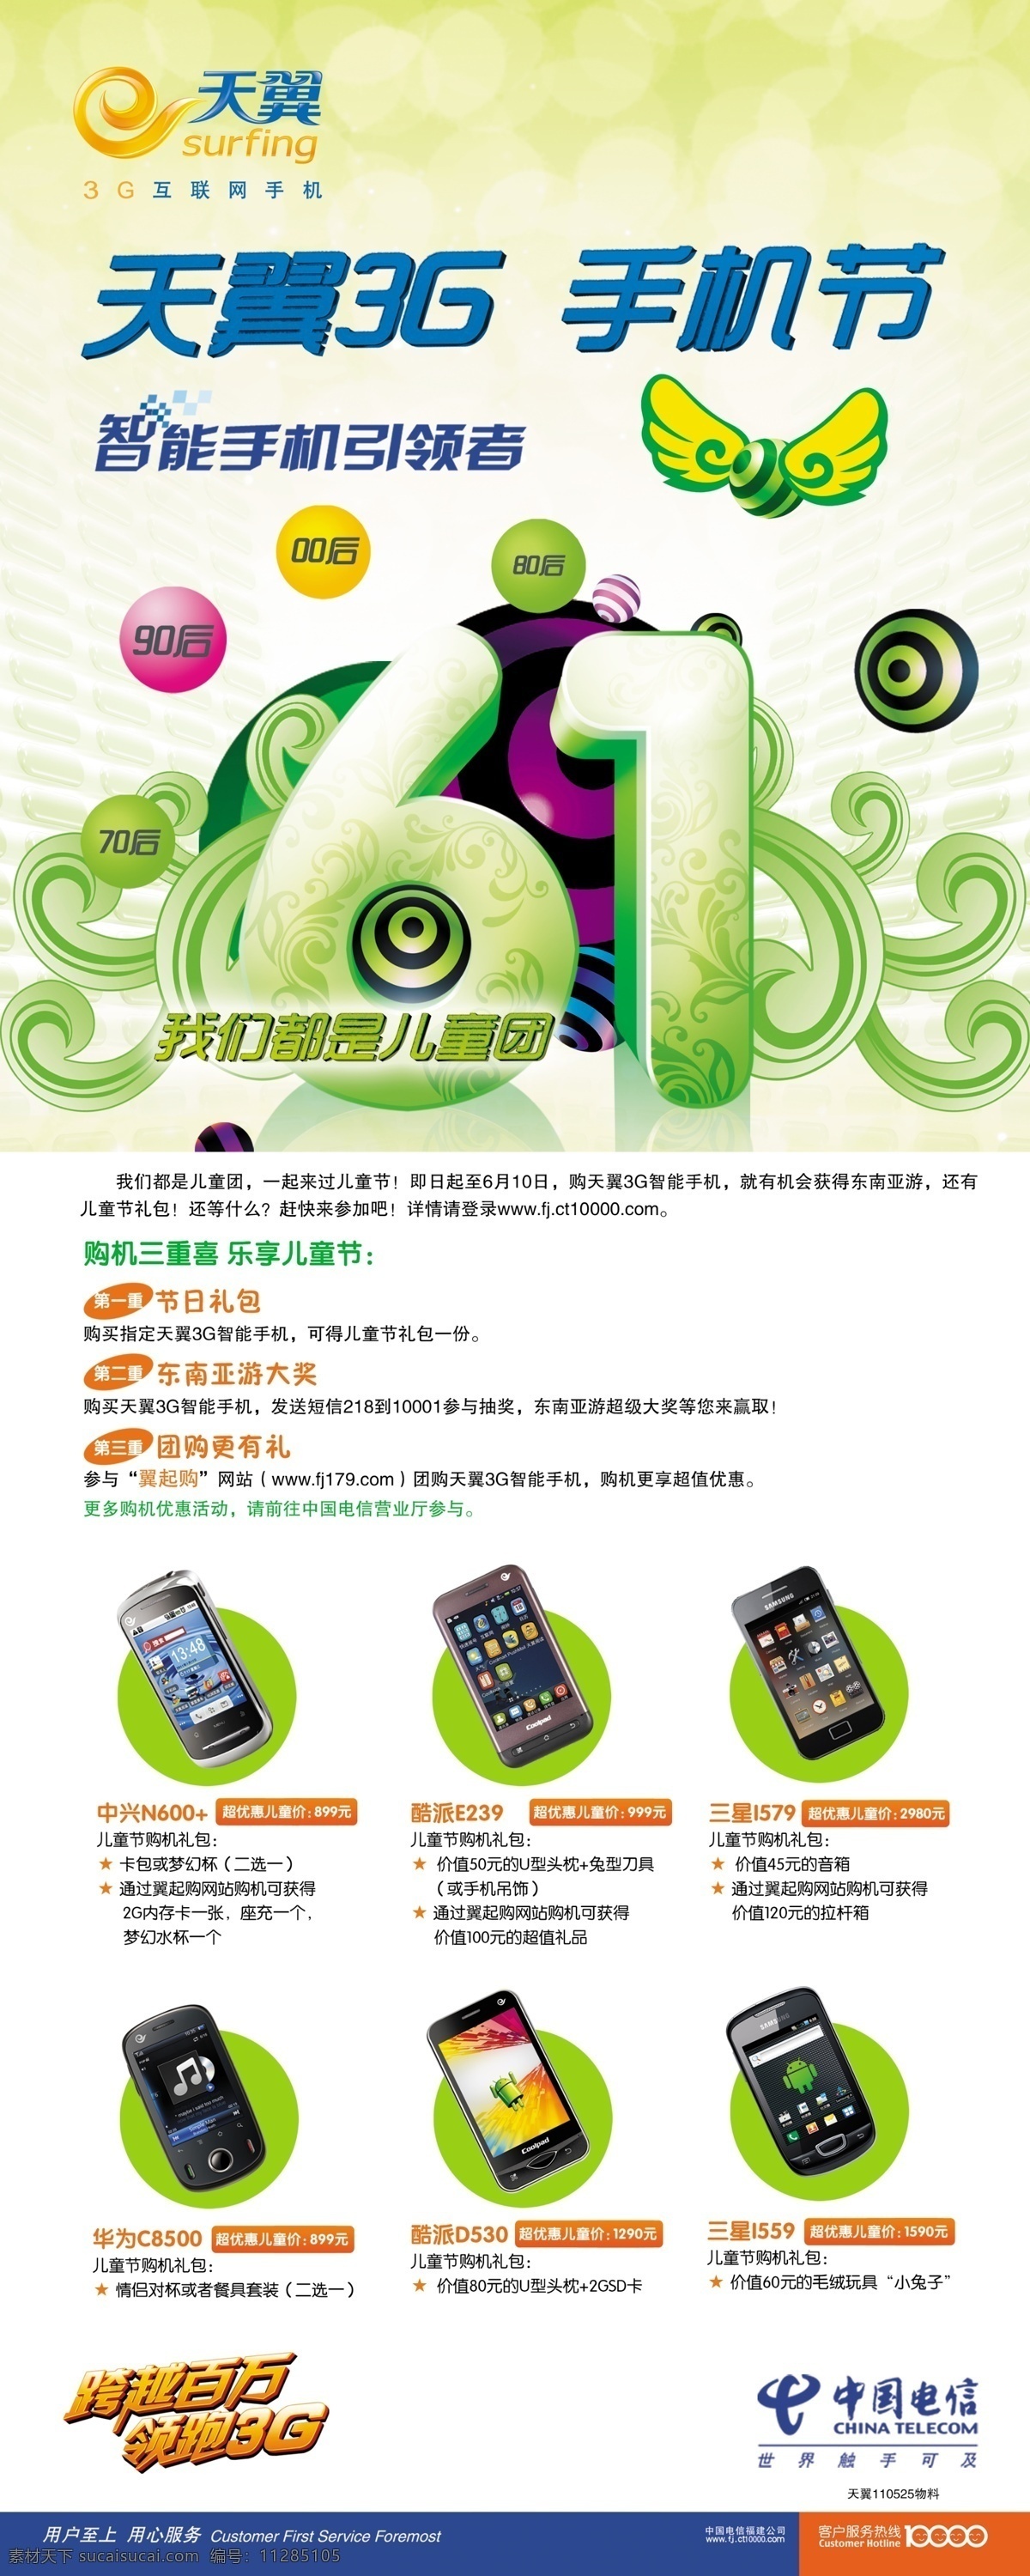 3g手机 底纹 电信 广告设计模板 花纹 手机 天翼 天翼3g 手机行 中国电信 智能手机 展板 展板模板 源文件 矢量图 现代科技